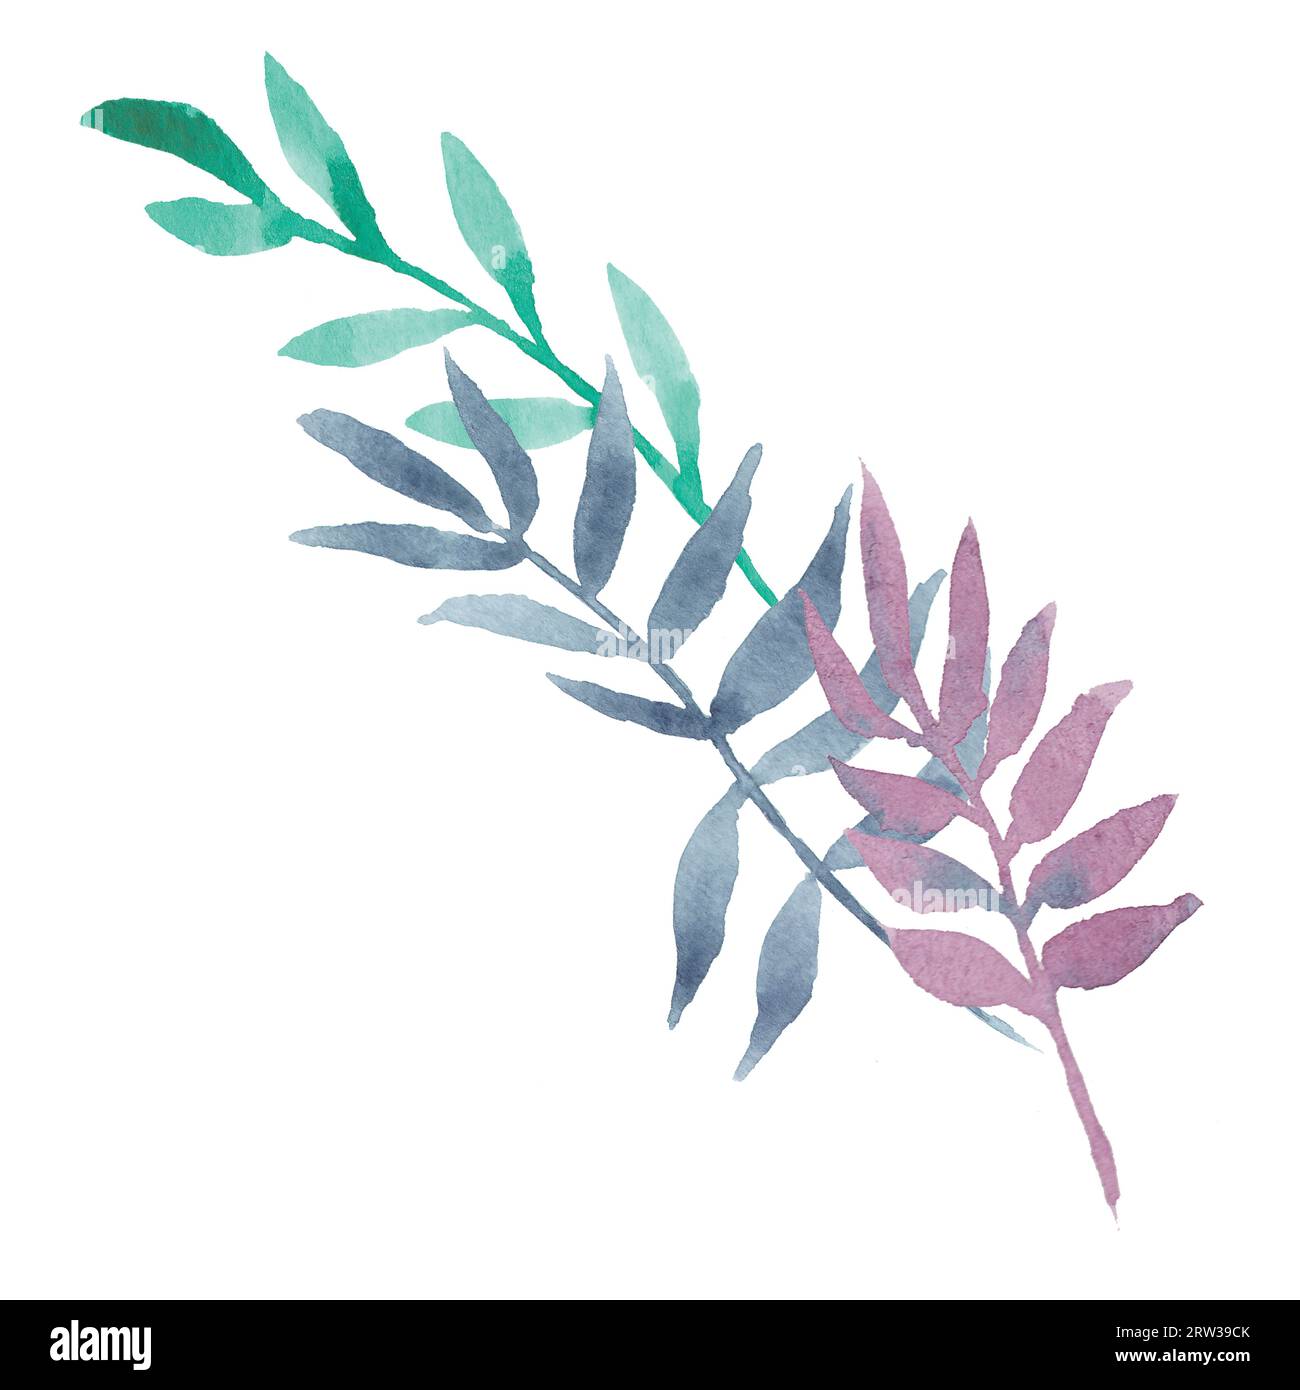 Handgezeichnete Aquarelldekoration Eukalyptus- oder Palmenzweige mit bunten Blättern: Violett, Minze, Marineblau. Gut für Drucke, Hochzeit Stockfoto